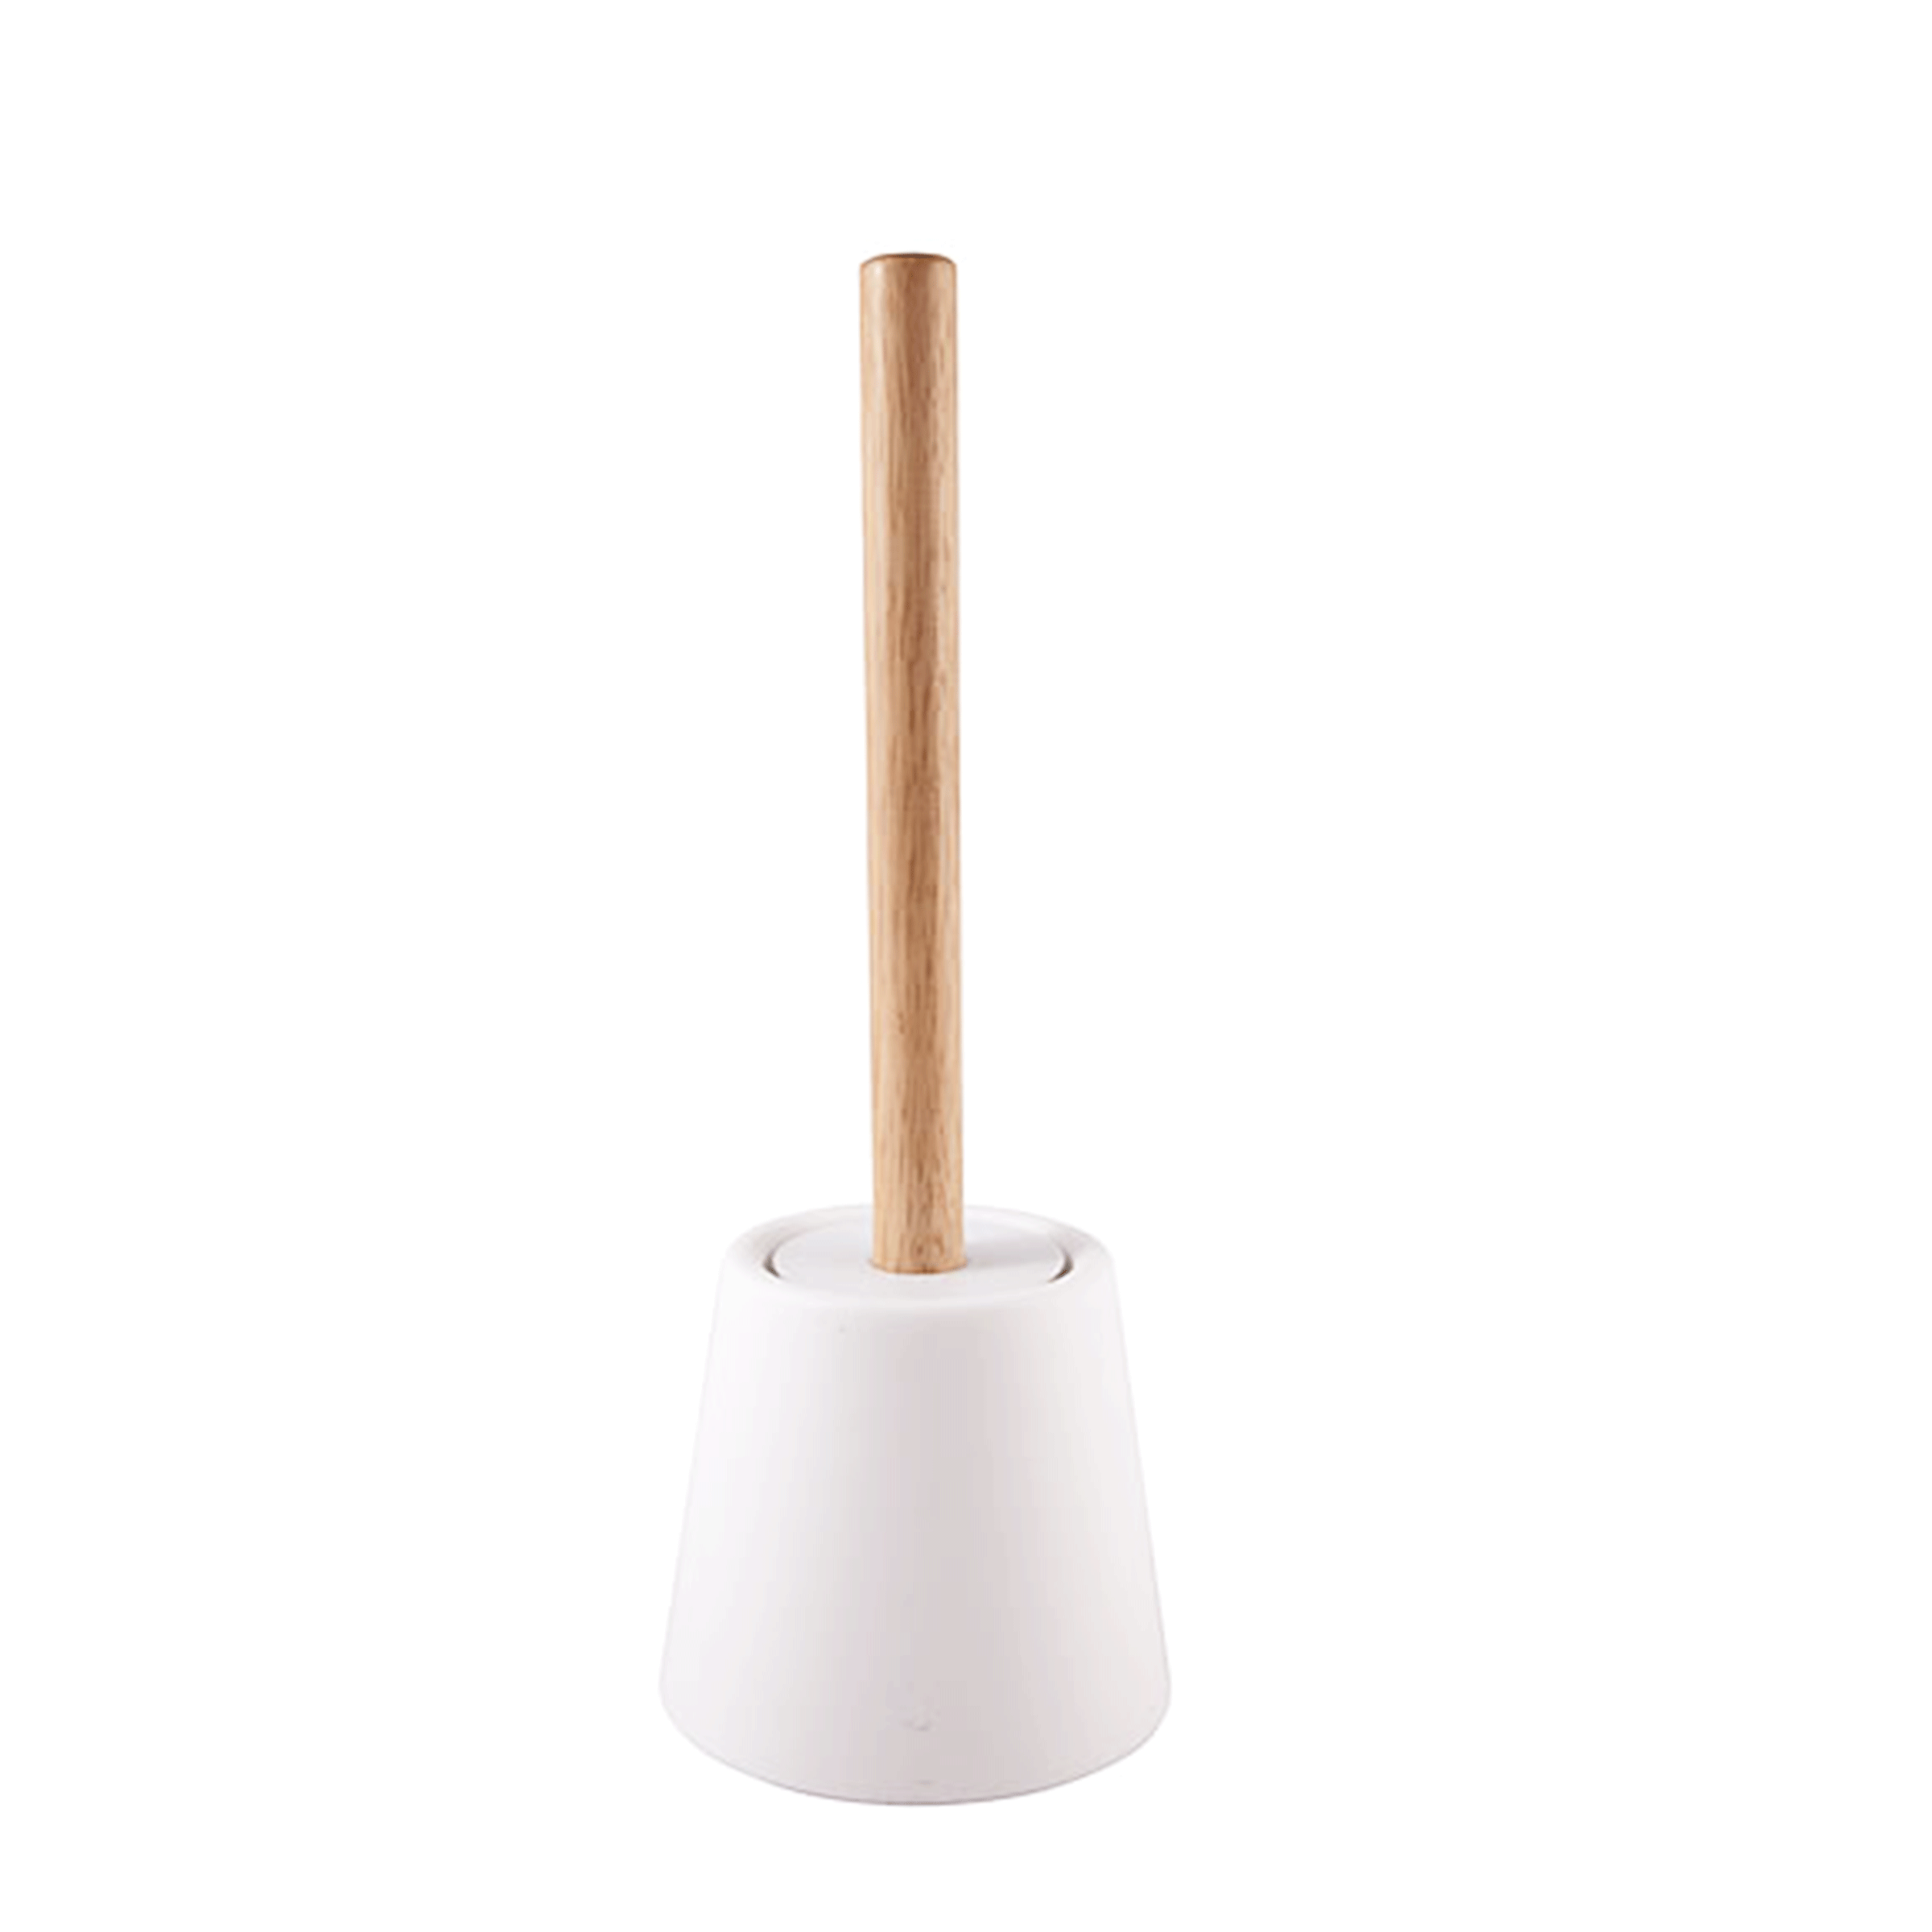 Brosse pour toilettes avec manche en bois brosse noire et base en plastique blanc